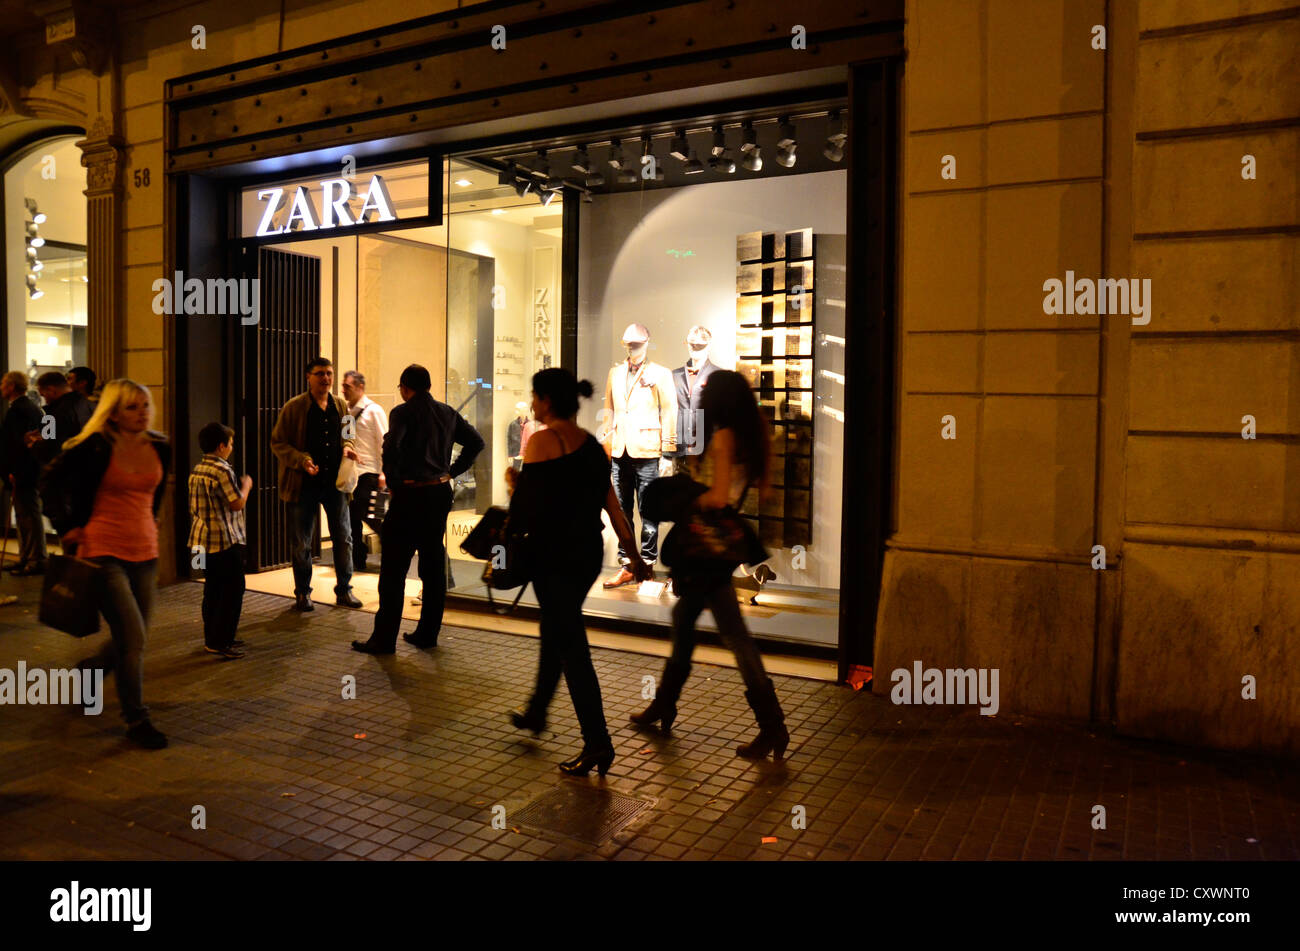 Zara shop in Pelayo Street - Barcelona Stock Photo - Alamy